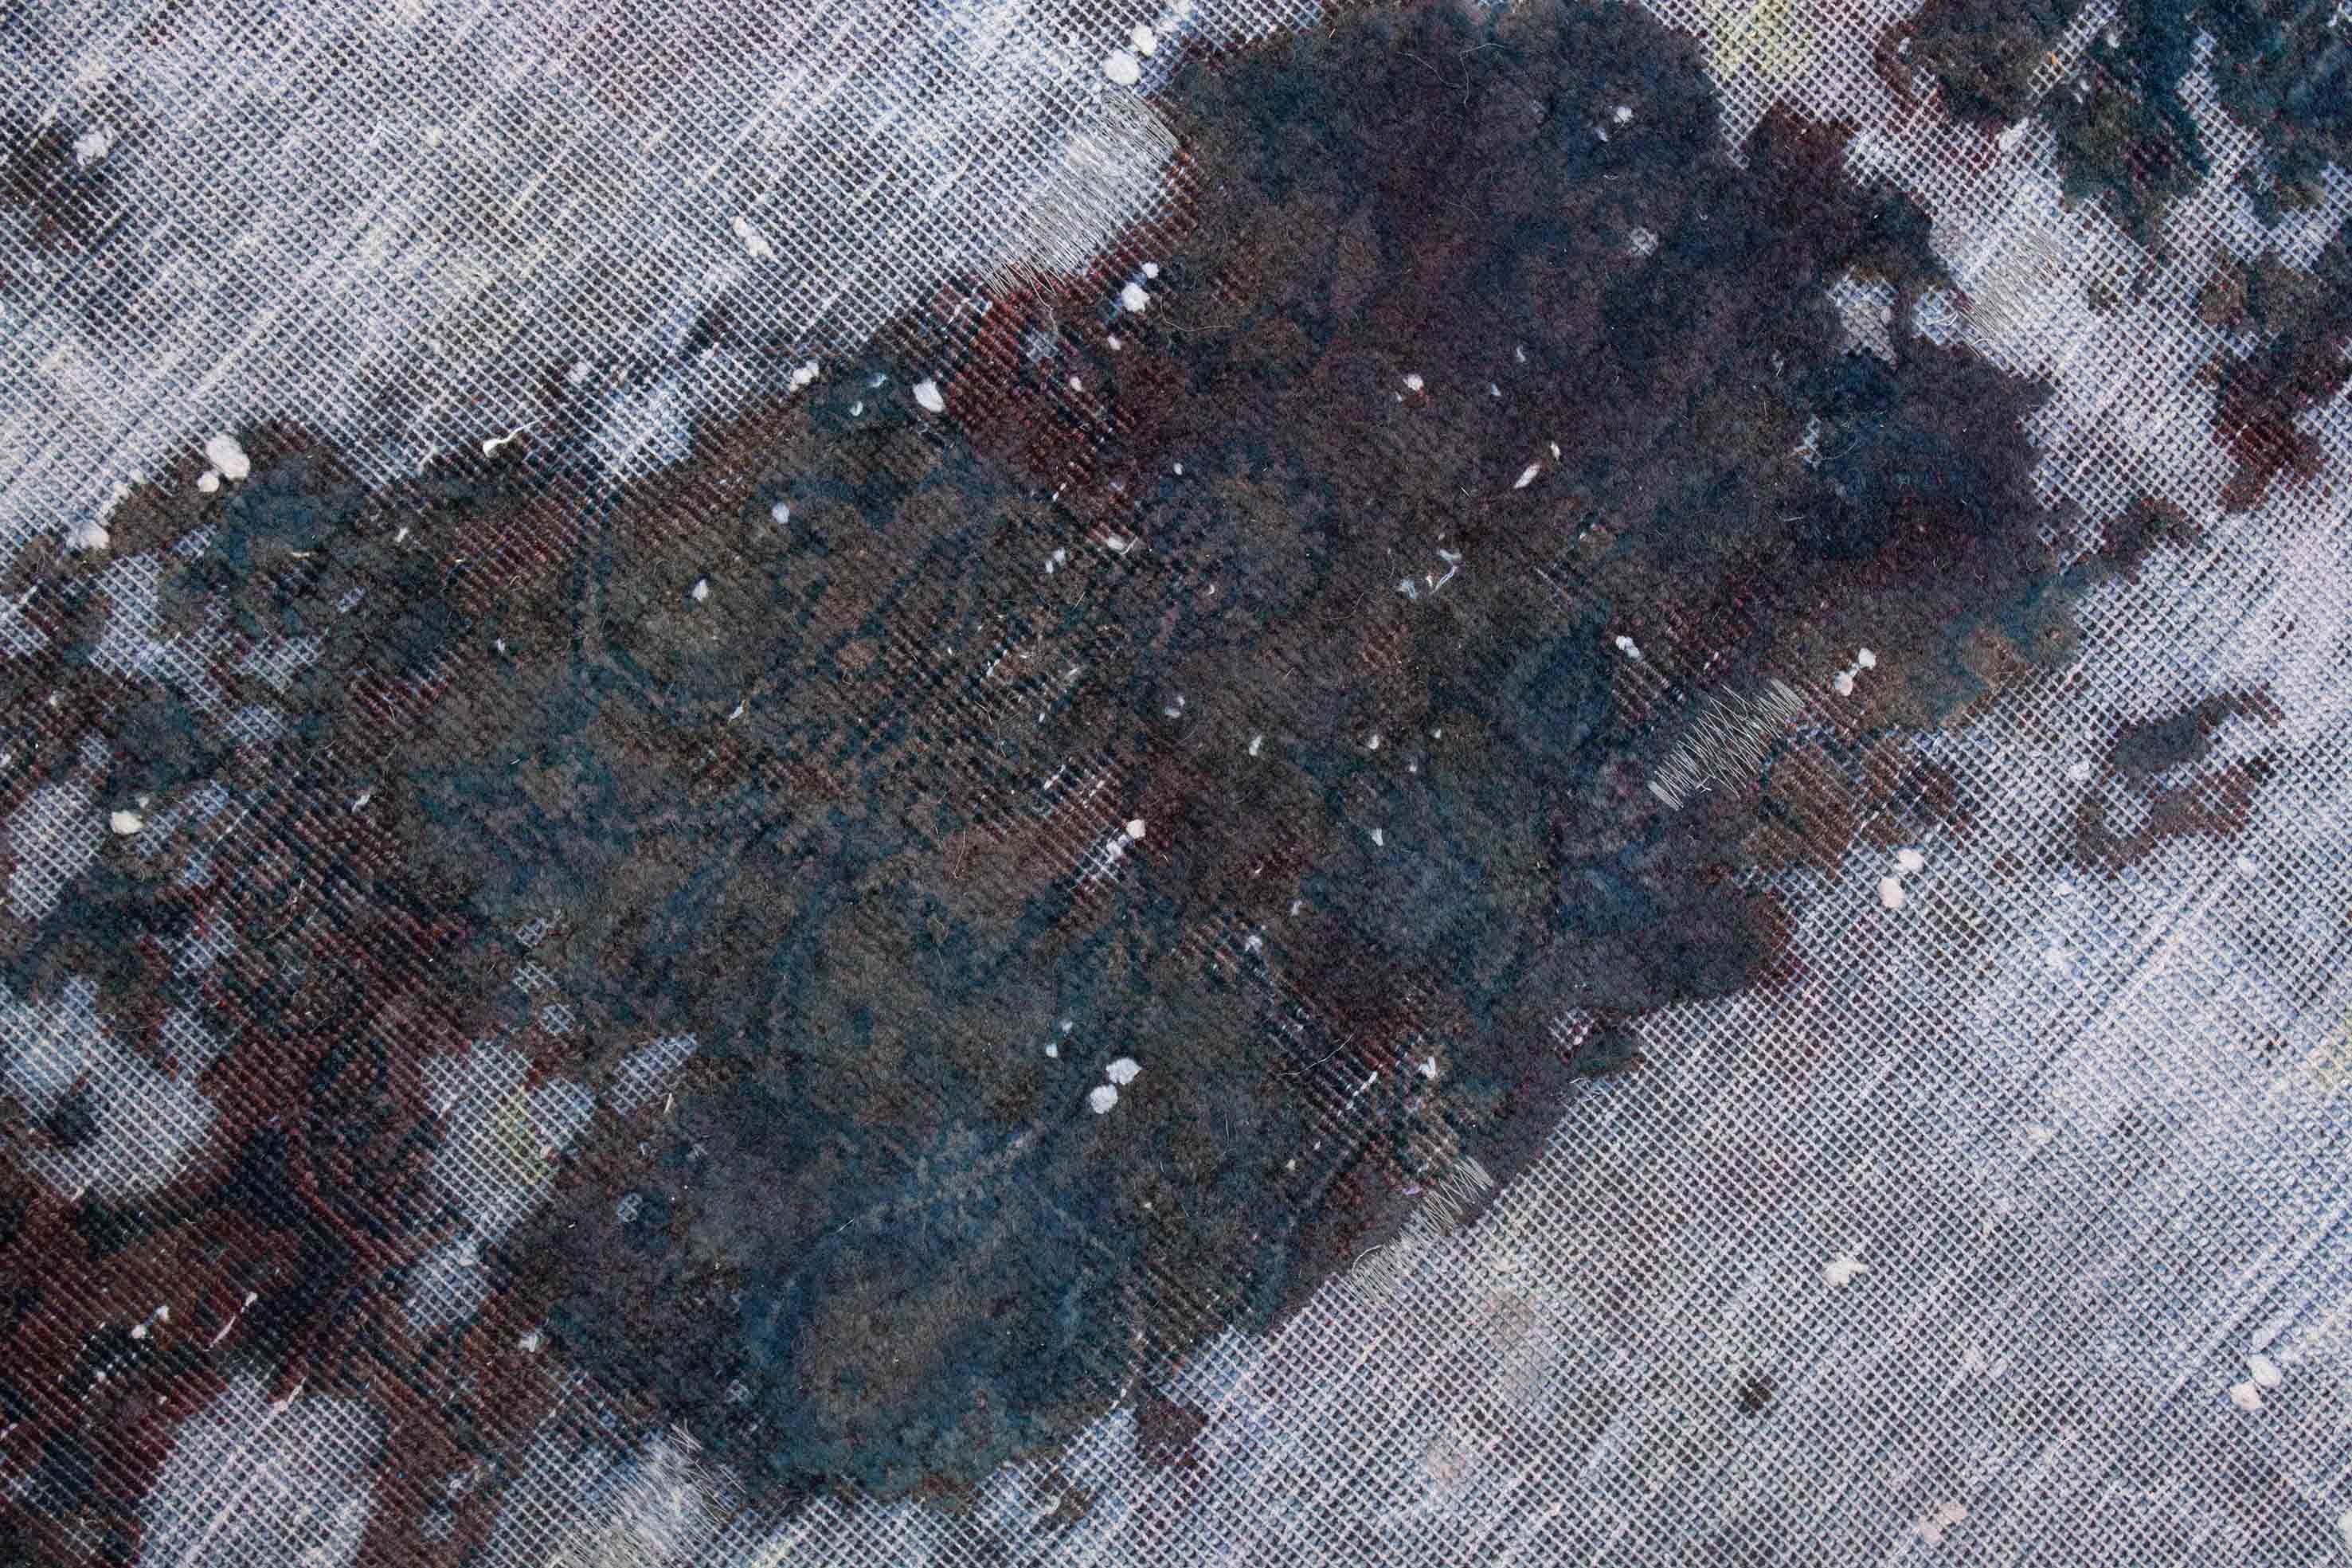 Eine Fotoaufnahme eines Vintage Teppich Teppichs.